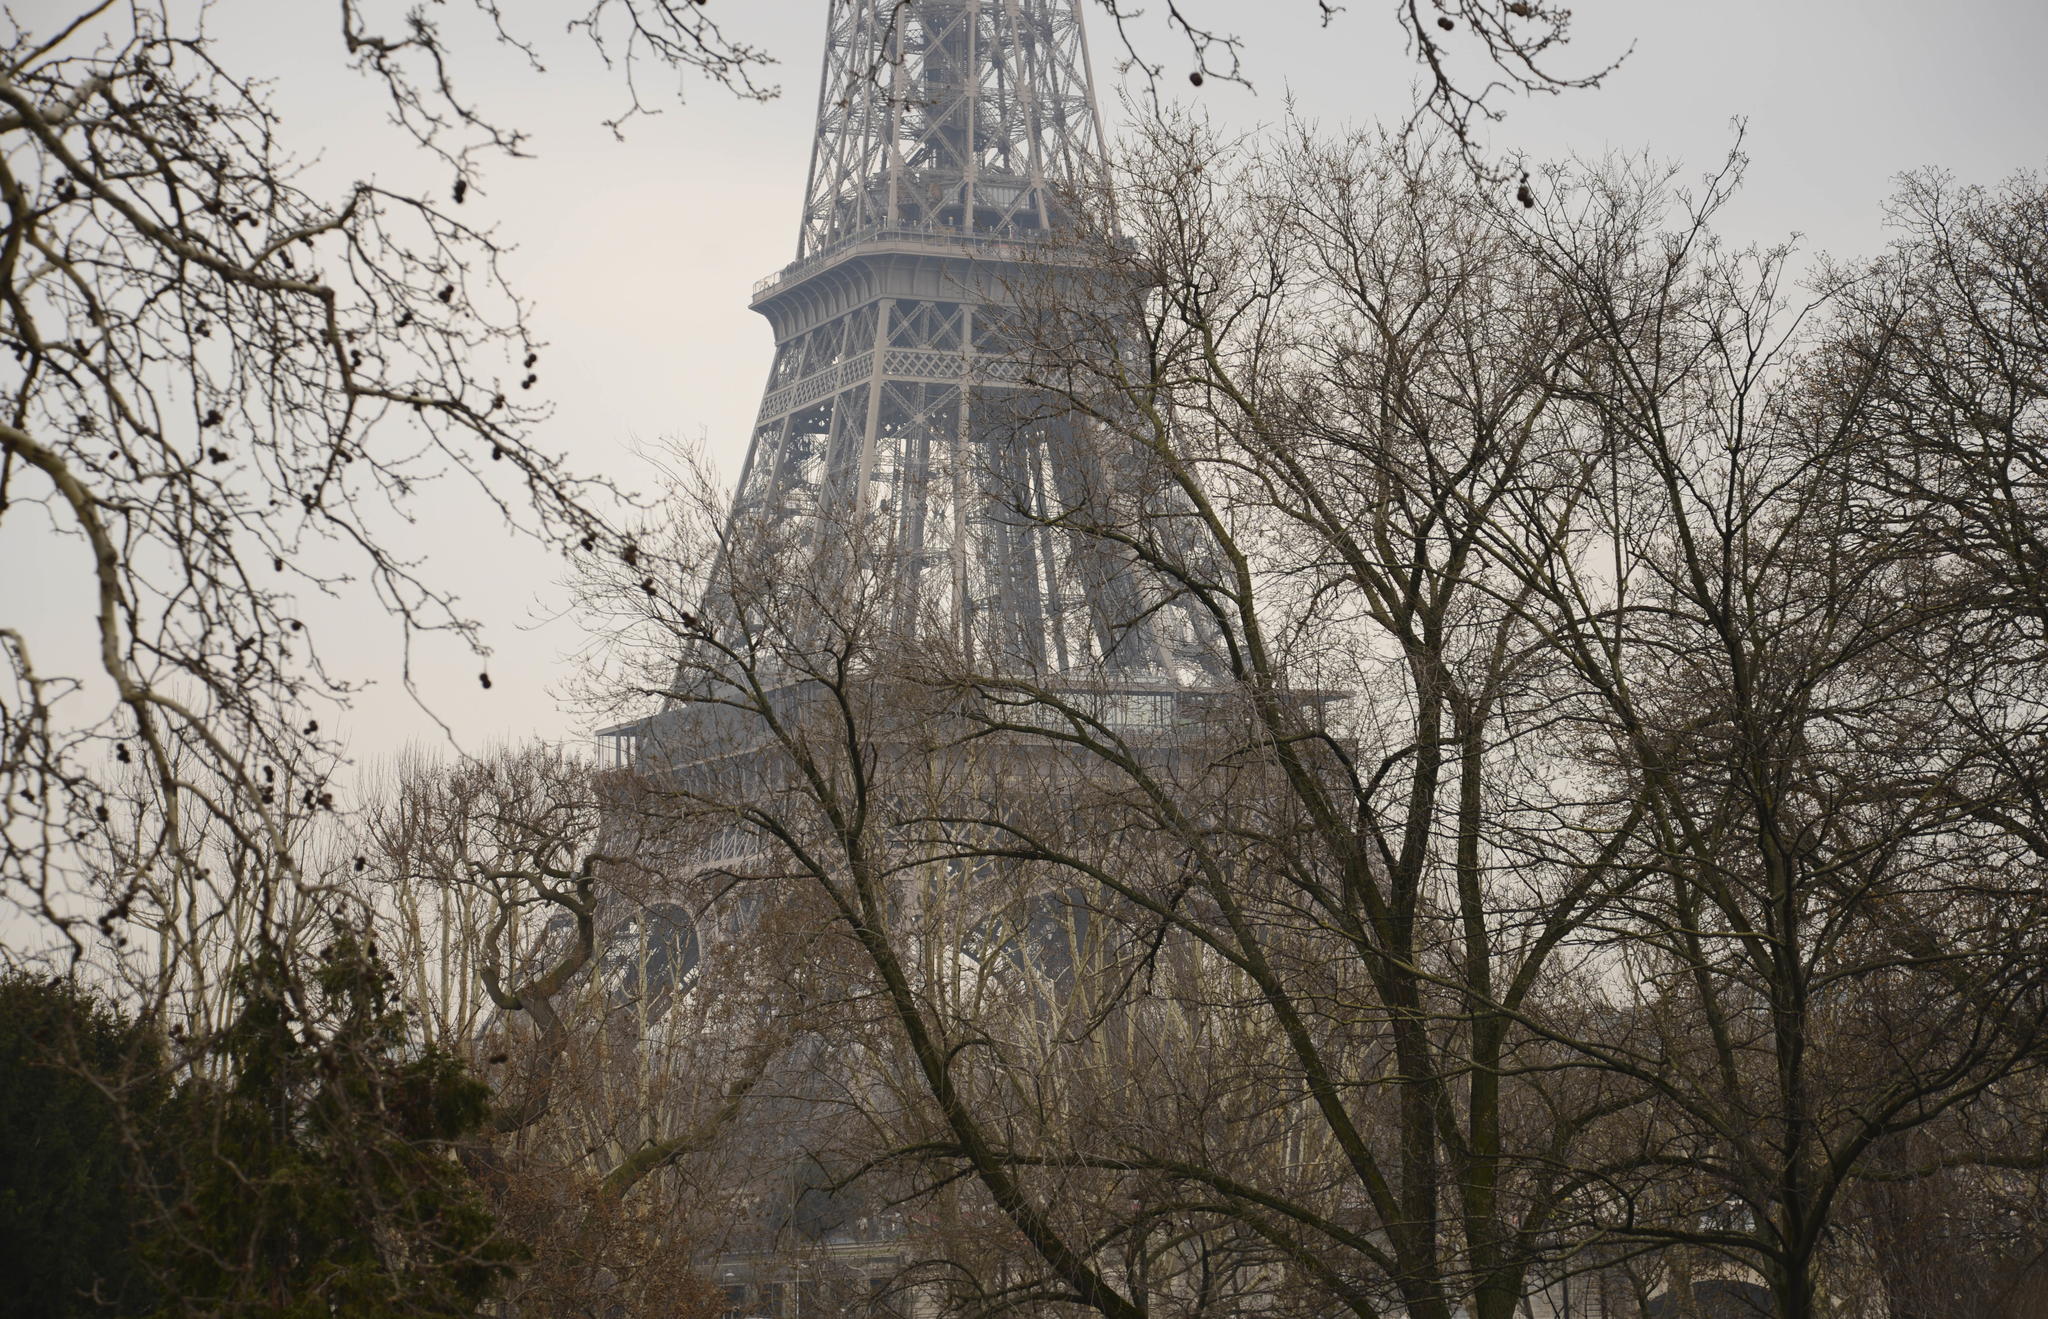 Paris in the Springtime by Deborah Crawford